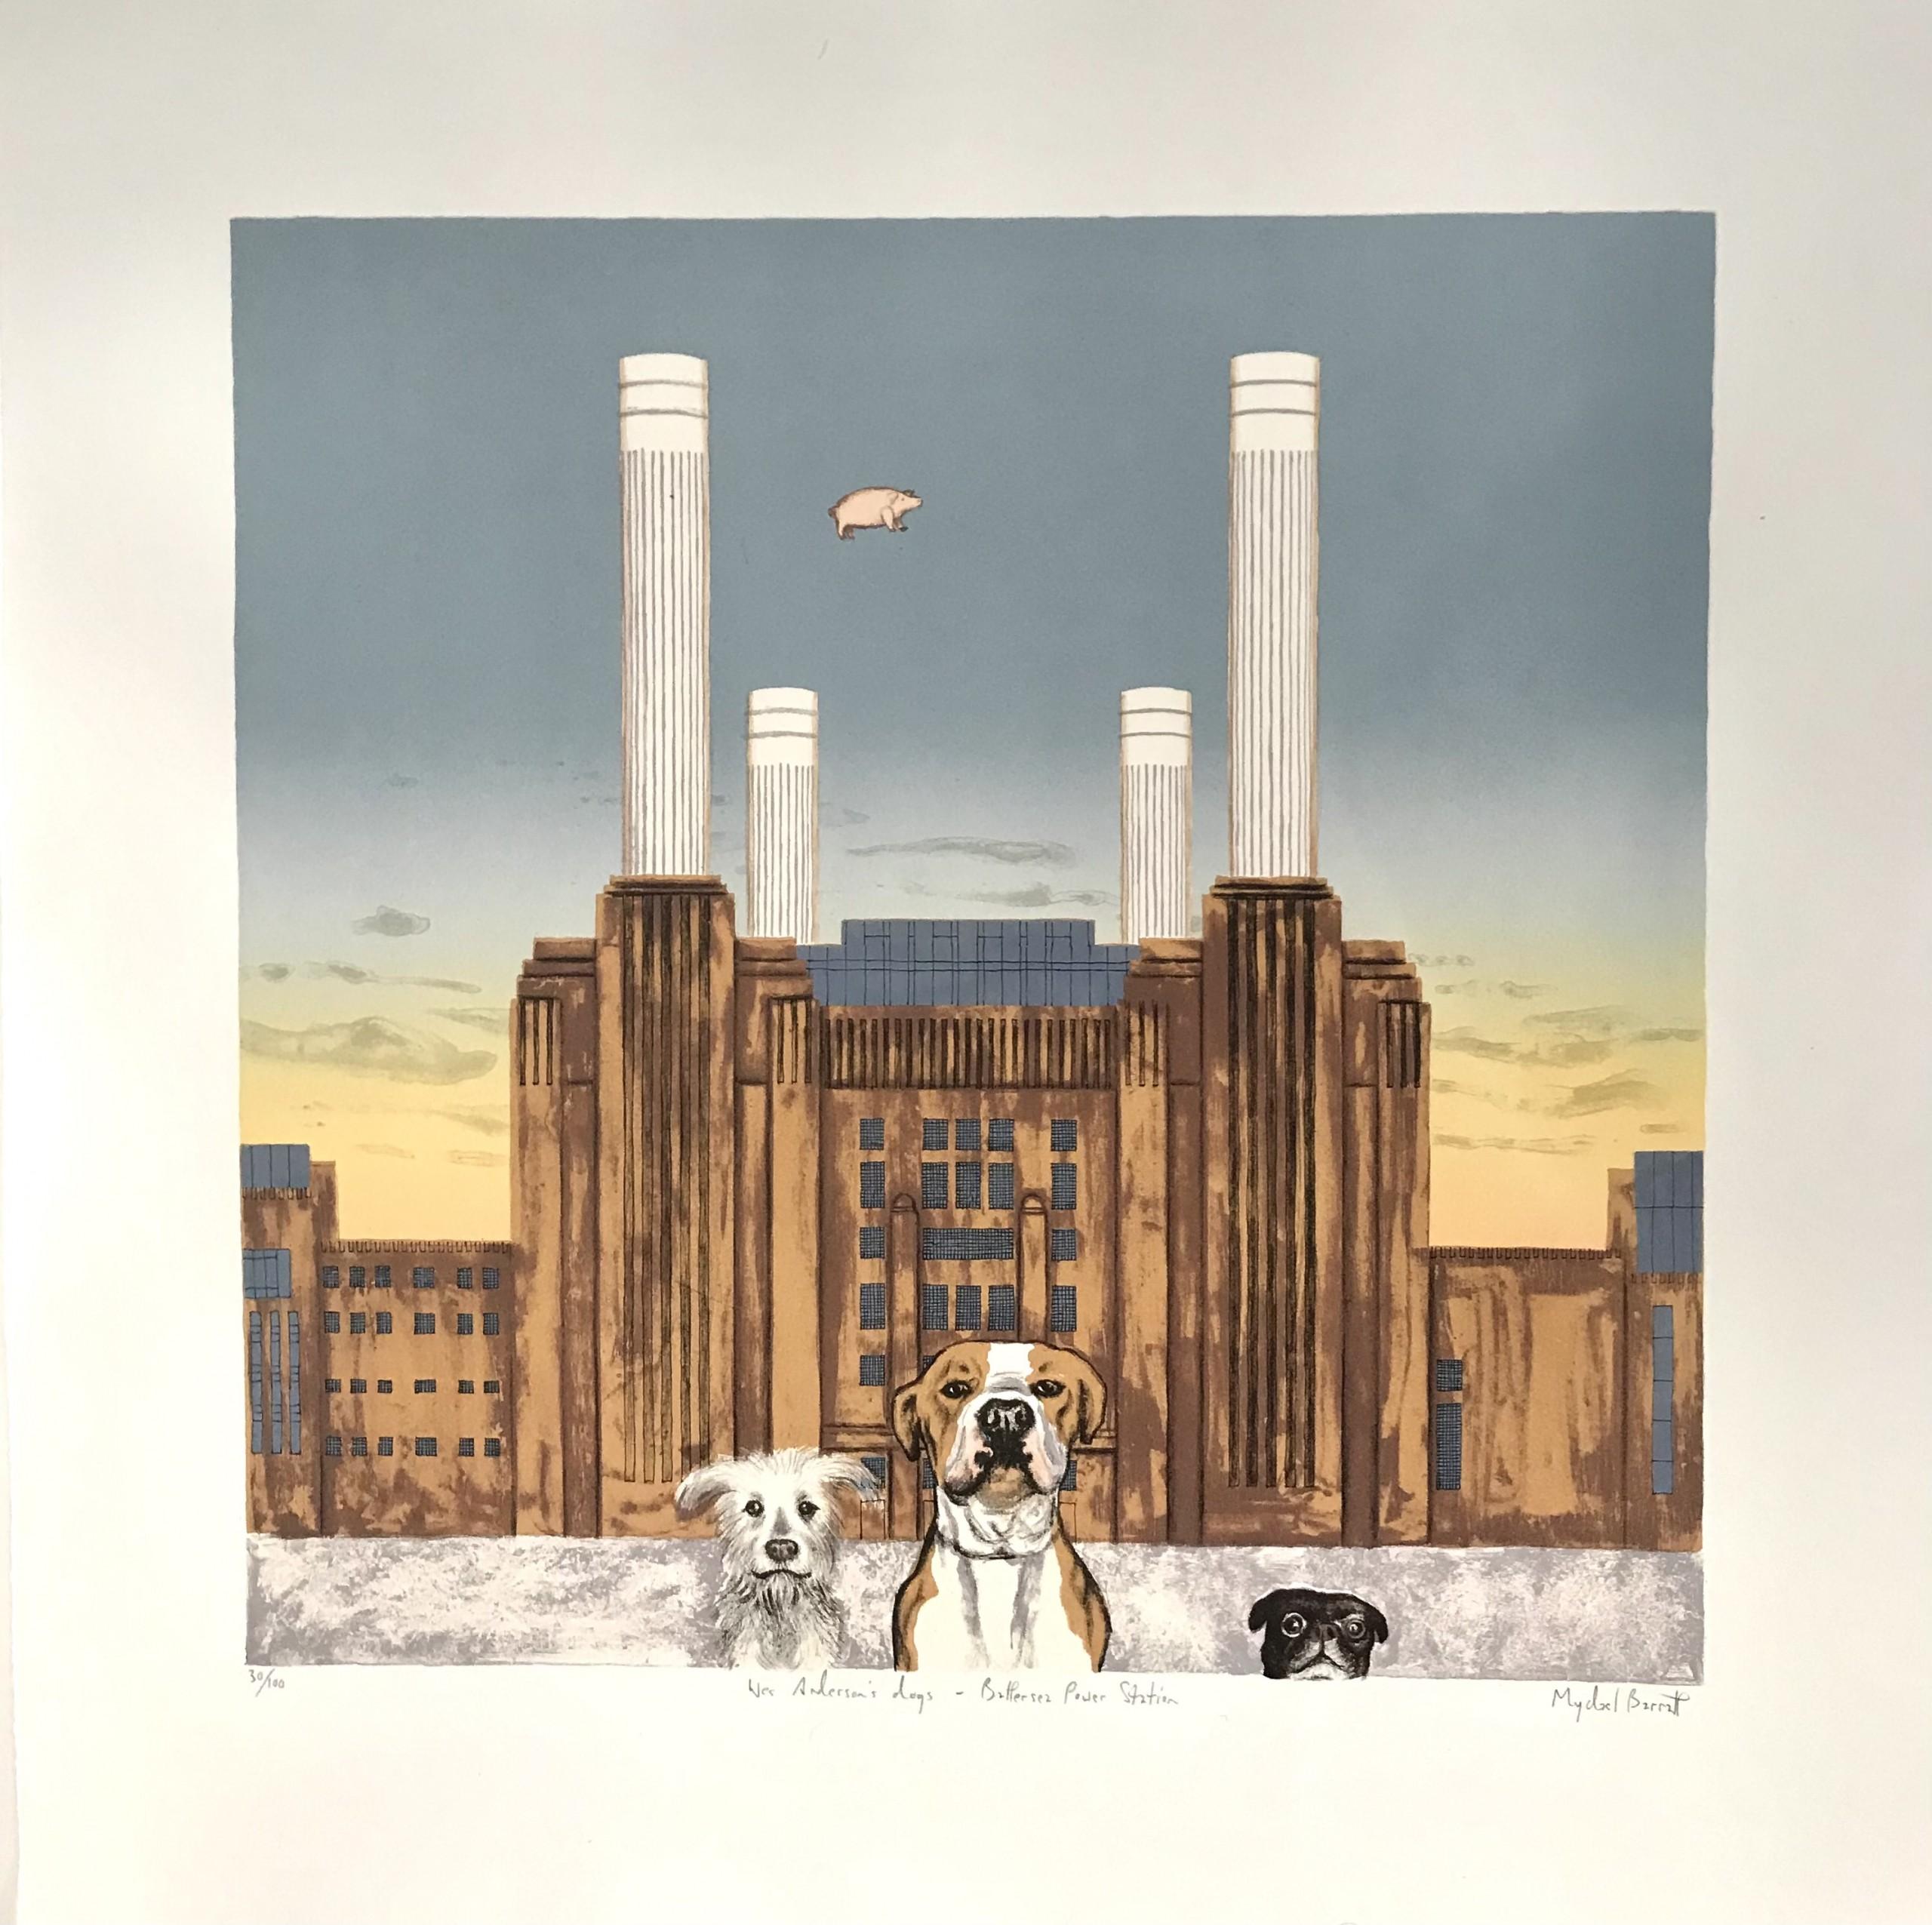 Le chien de Wes Anderson - Battersea Power Station, paysage urbain de Londres, art animalier - Contemporain Print par Mychael Barratt